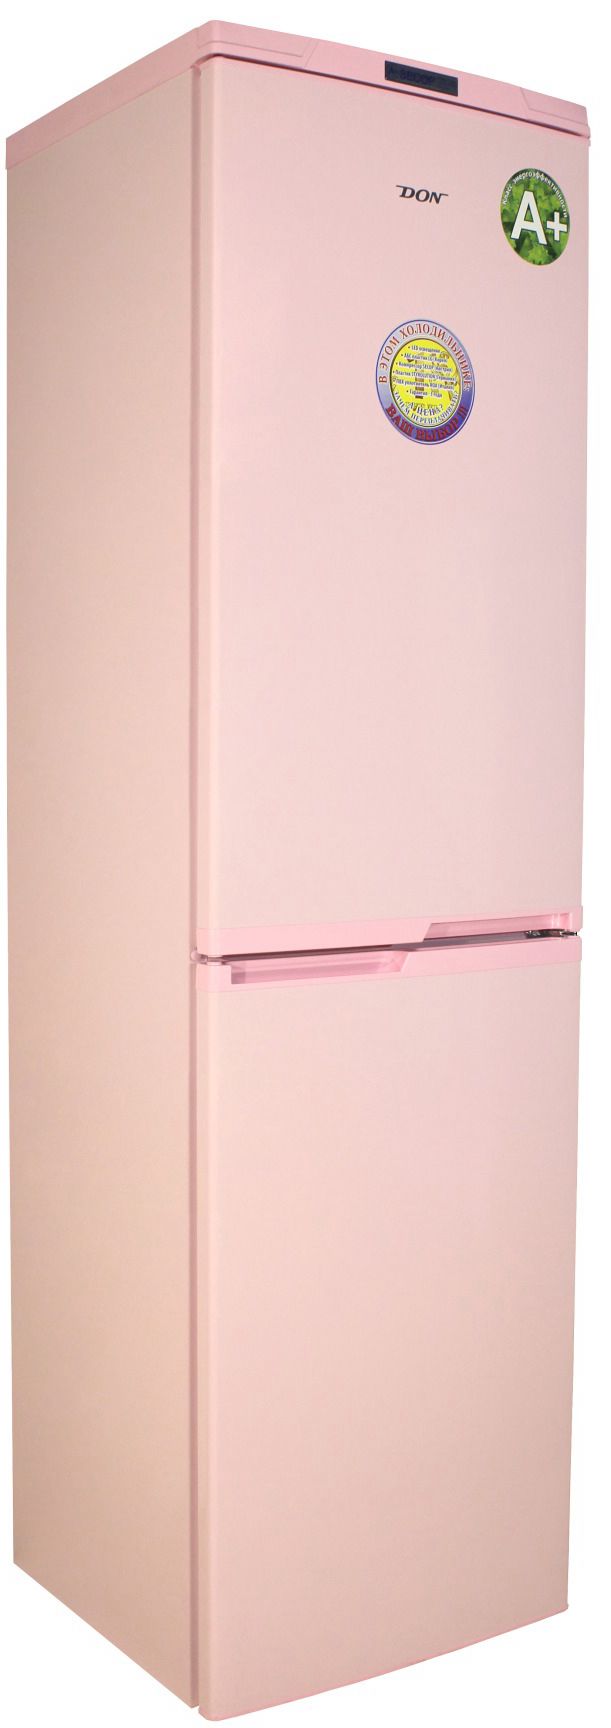 холодильник don r297, купить в Красноярске холодильник don r297,  купить в Красноярске дешево холодильник don r297, купить в Красноярске минимальной цене холодильник don r297